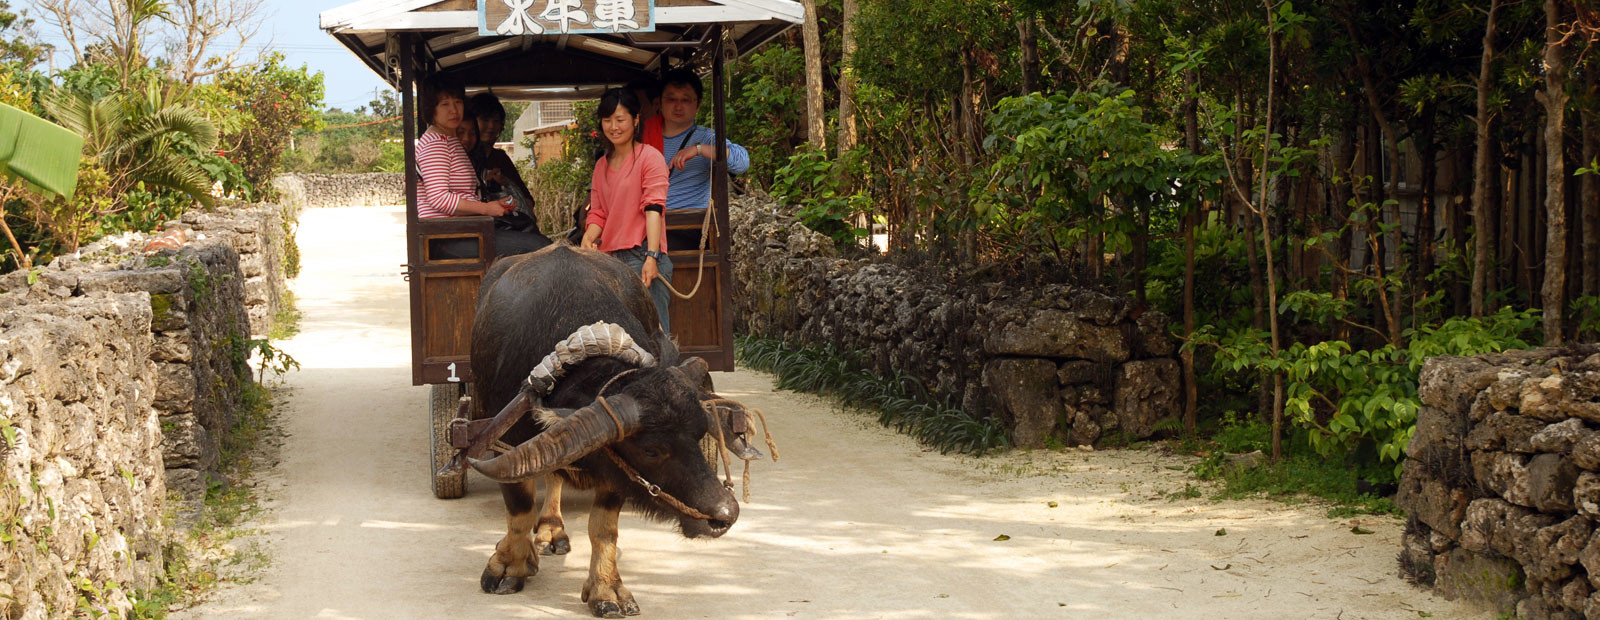 Buffel som drar vagn med människor